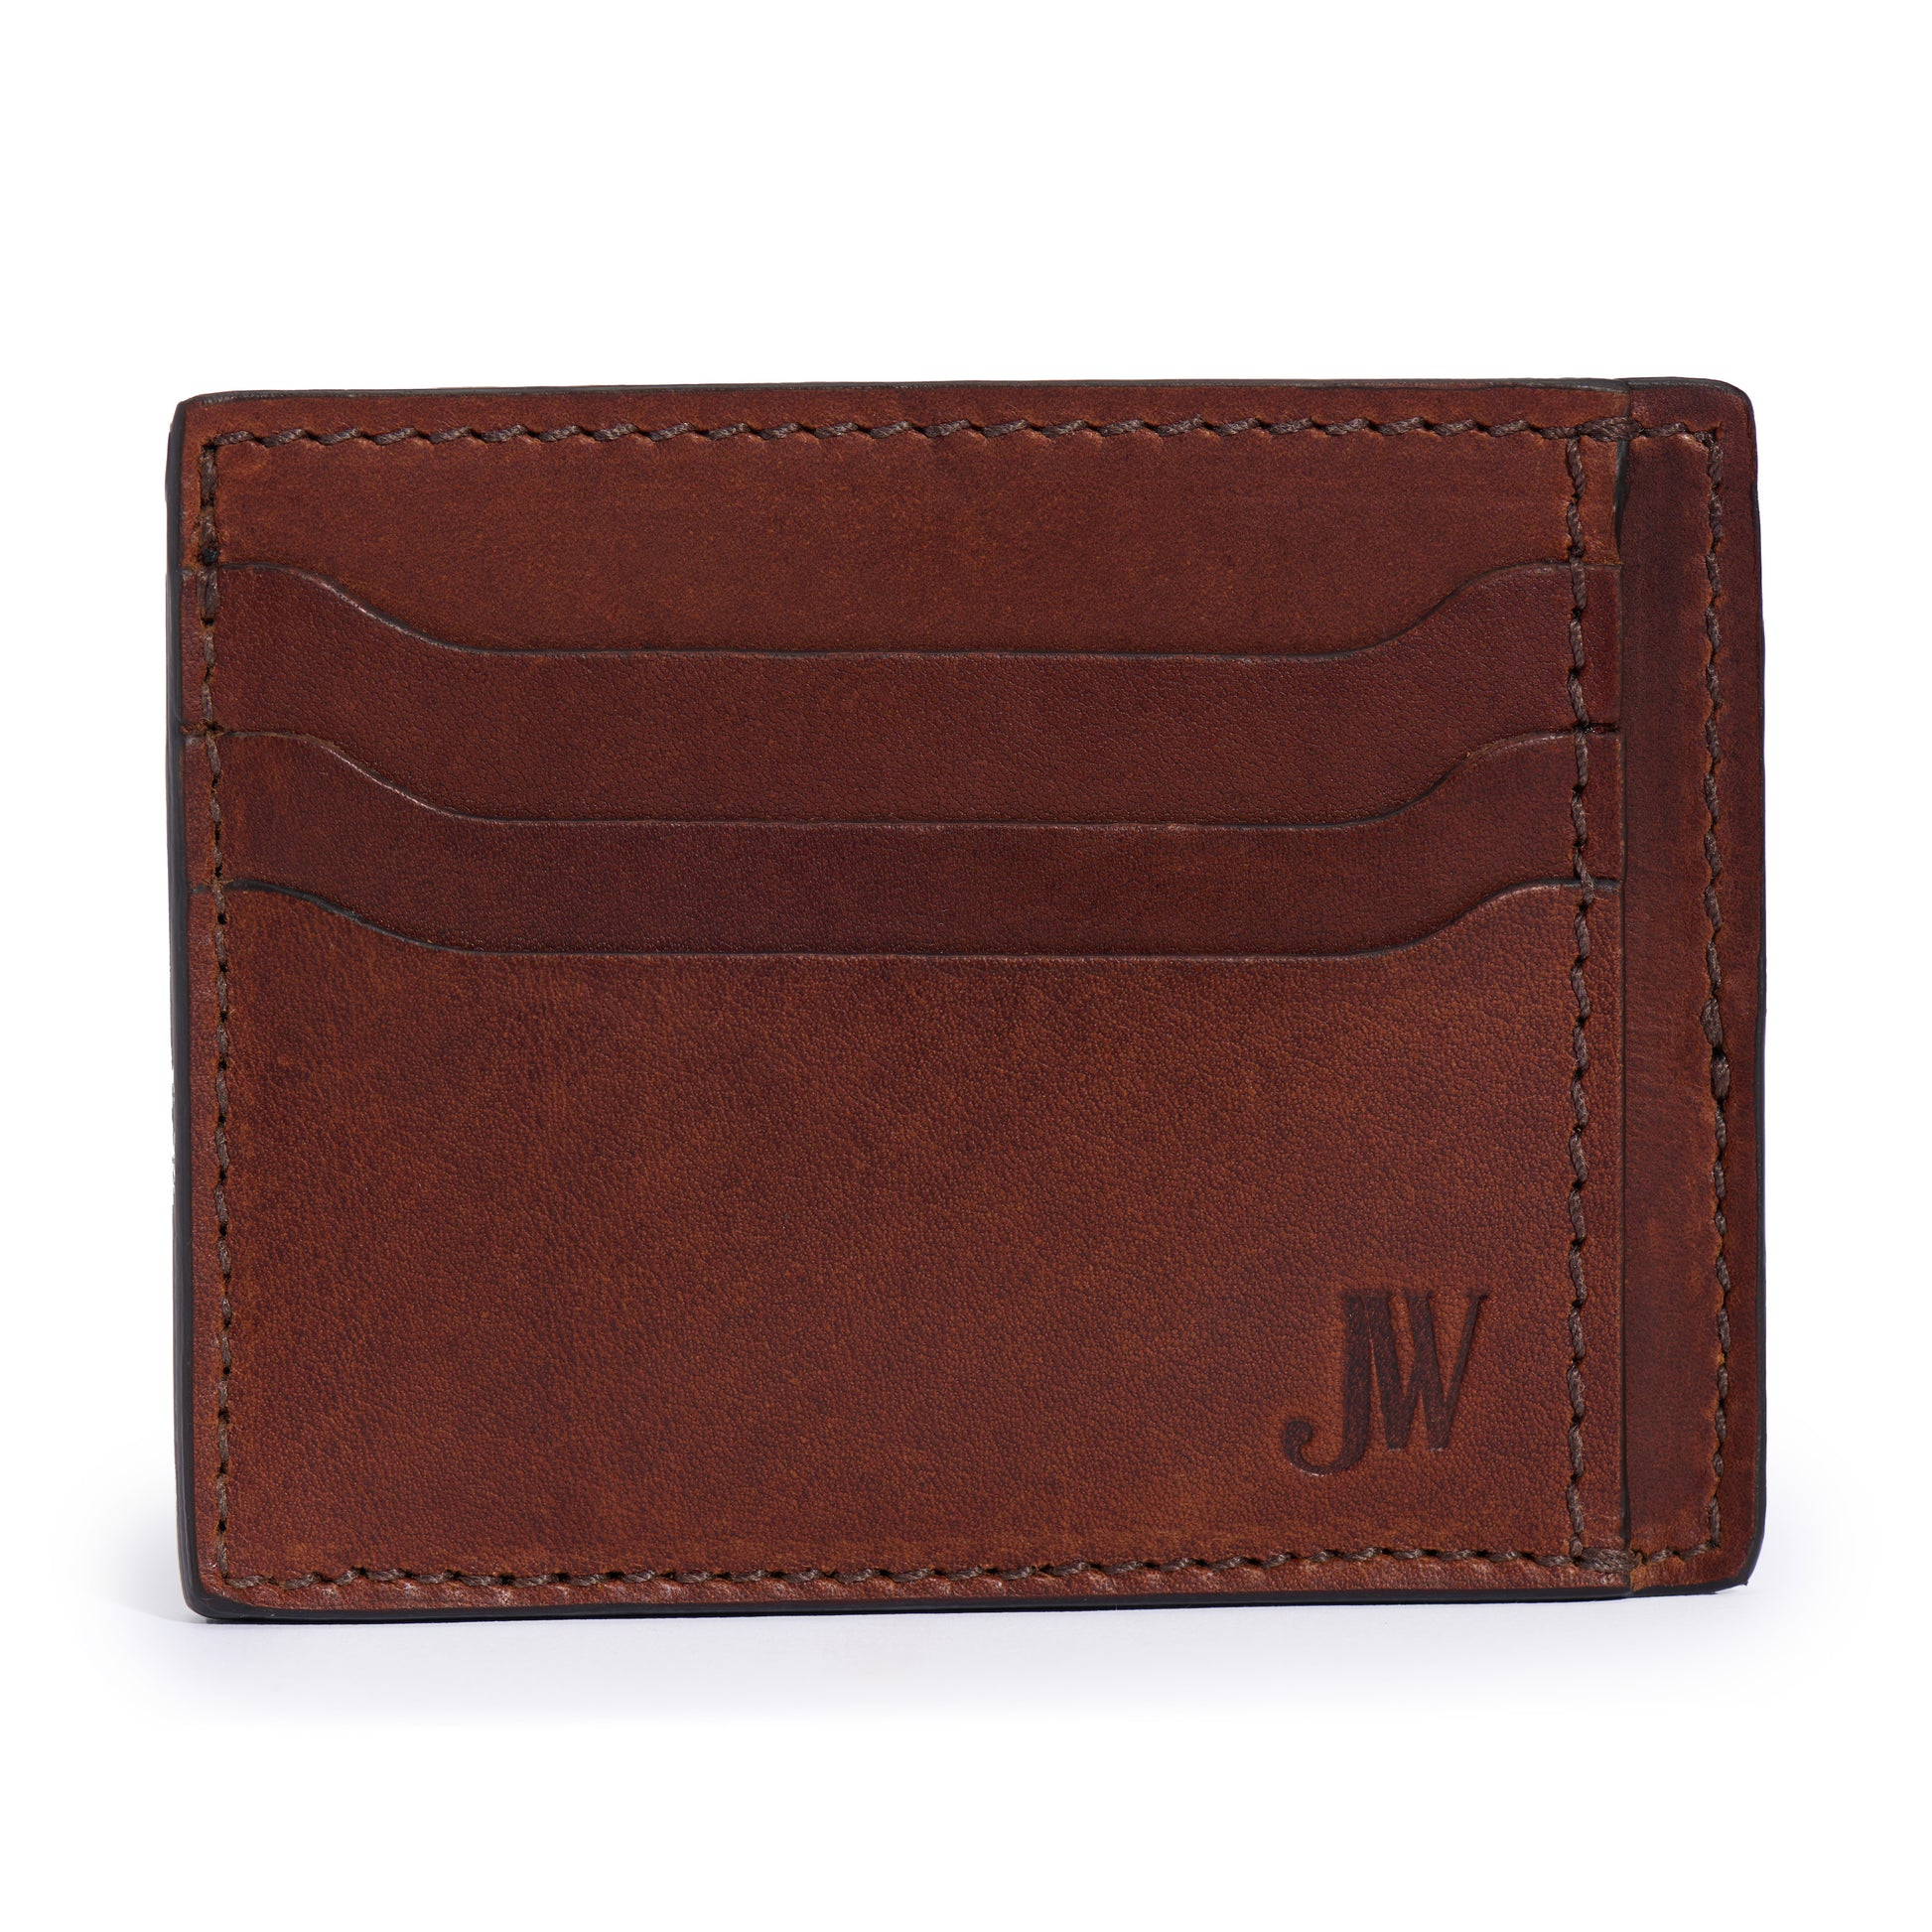 full grain slim leather wallet for front pocket by Jackson Wayne vintage brown color